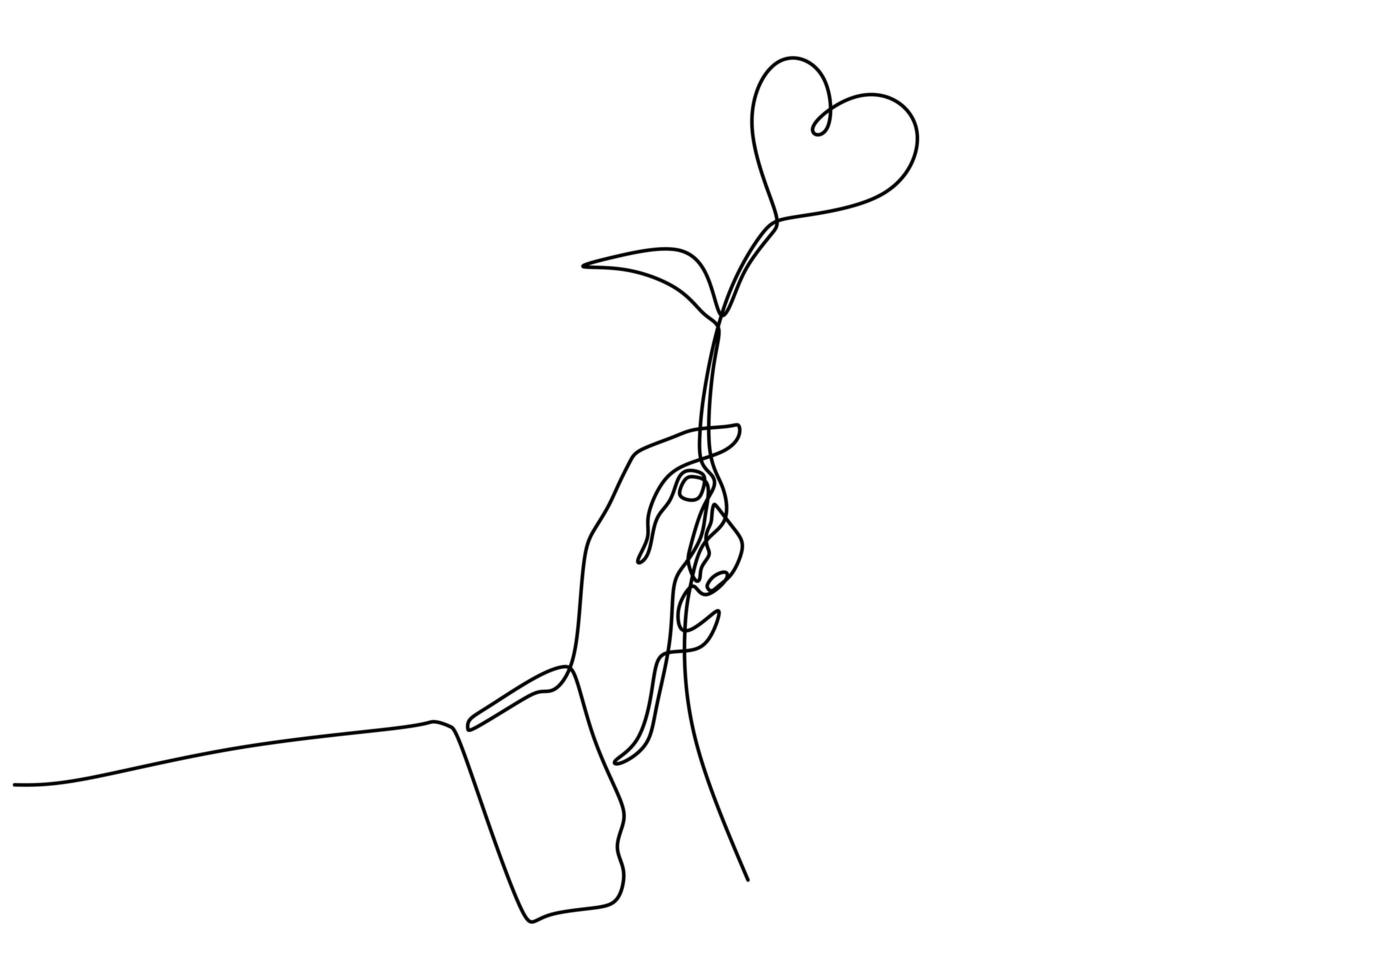 desenho de linha contínua de mão segurando uma planta de coração de amor, ilustração em vetor esboço desenhado de uma mão.